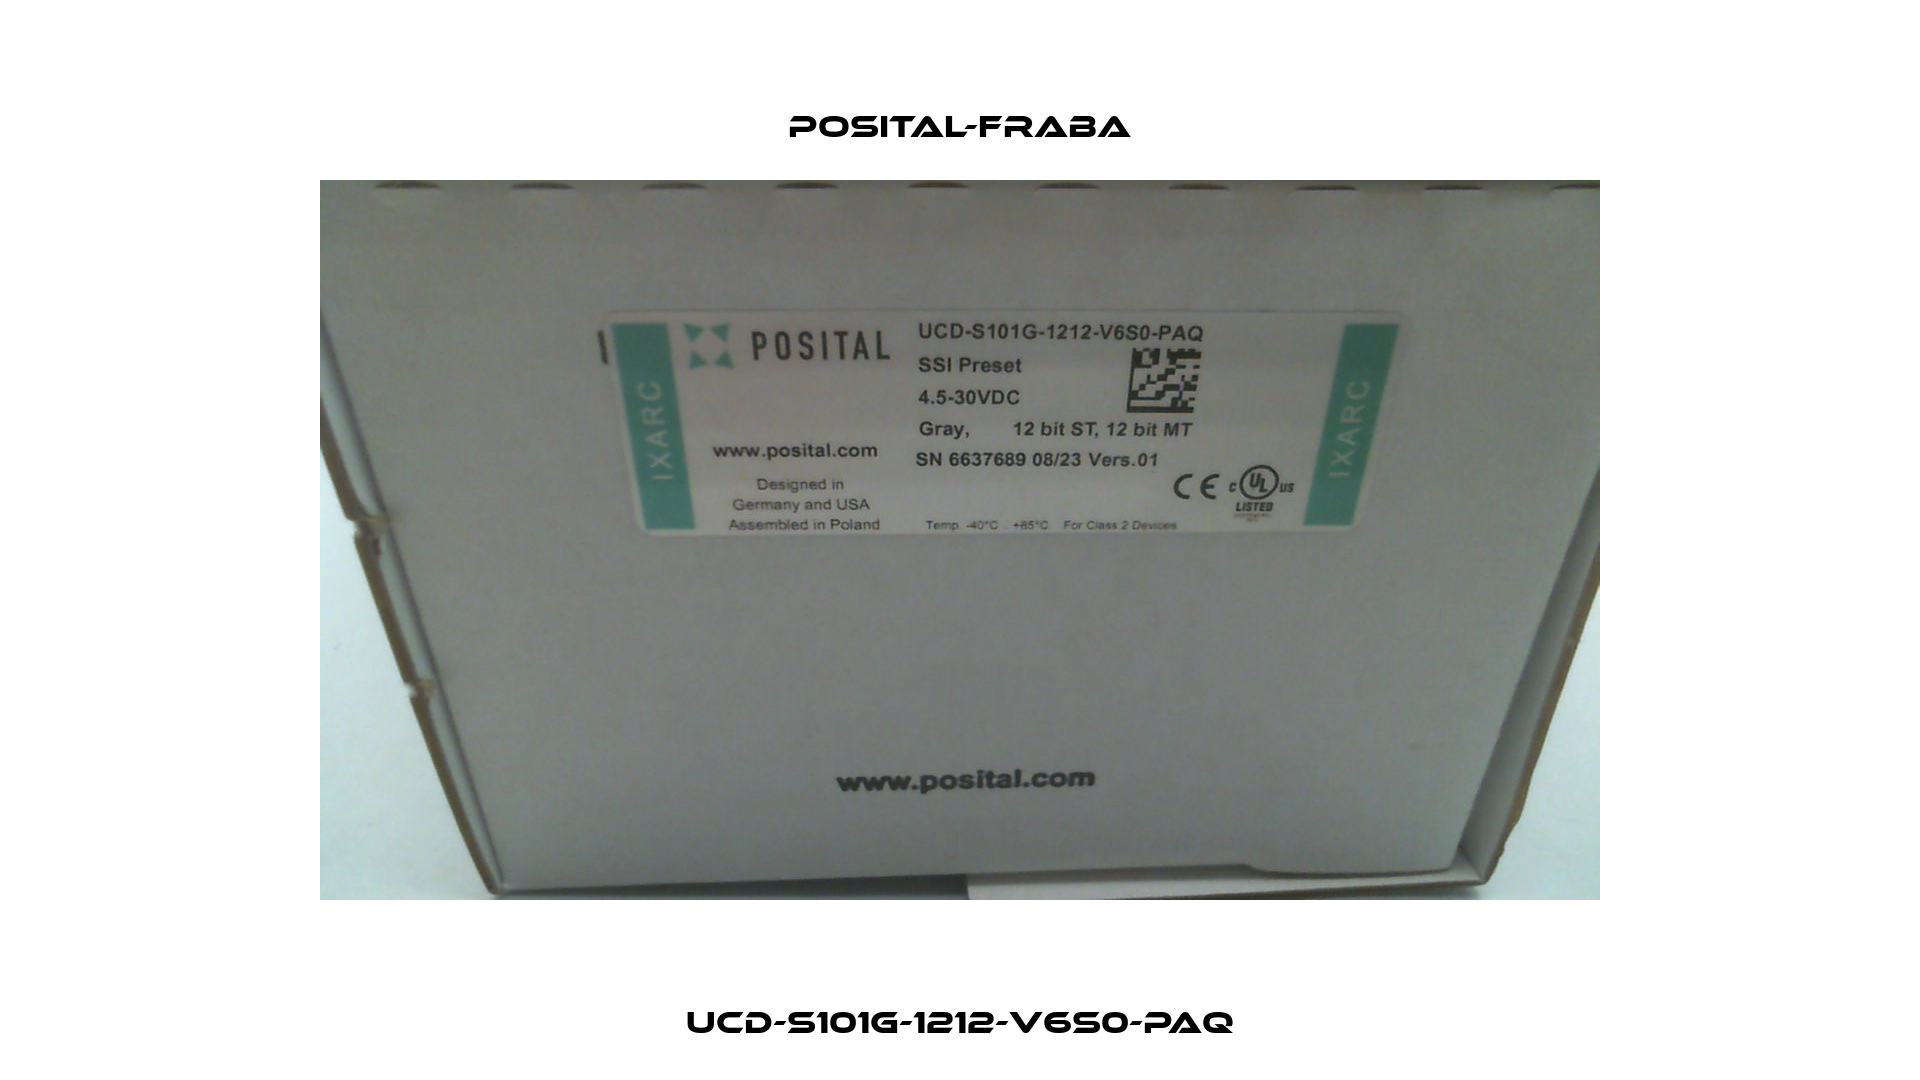 UCD-S101G-1212-V6S0-PAQ Posital-Fraba